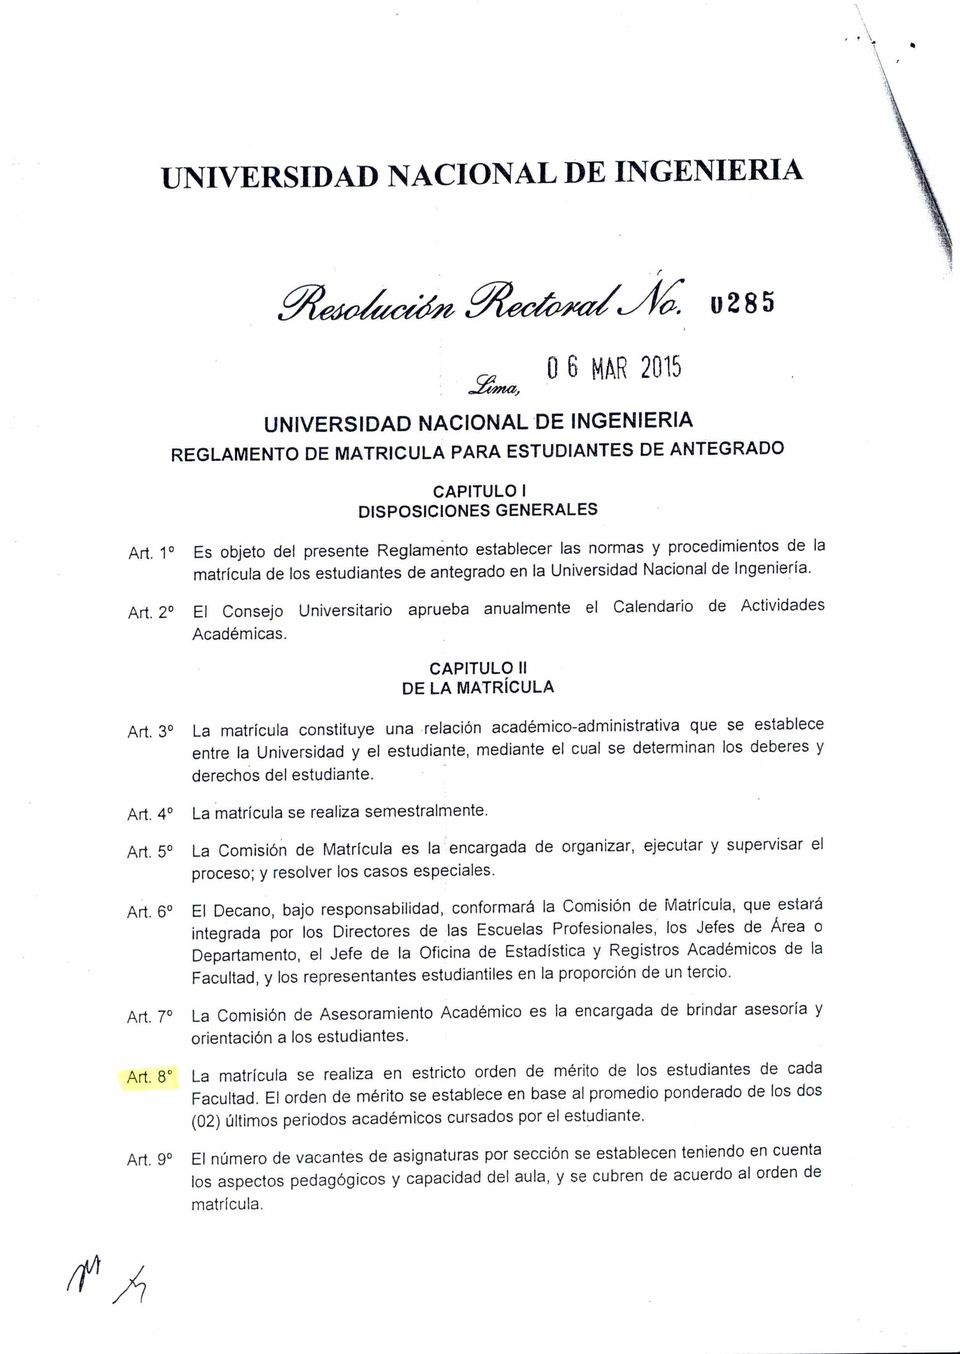 2 El Consejo Universitario aprueba anualmente el Calendario de Actividades Académicas. CAPITULO II DE LA MATRÍCULA Art.